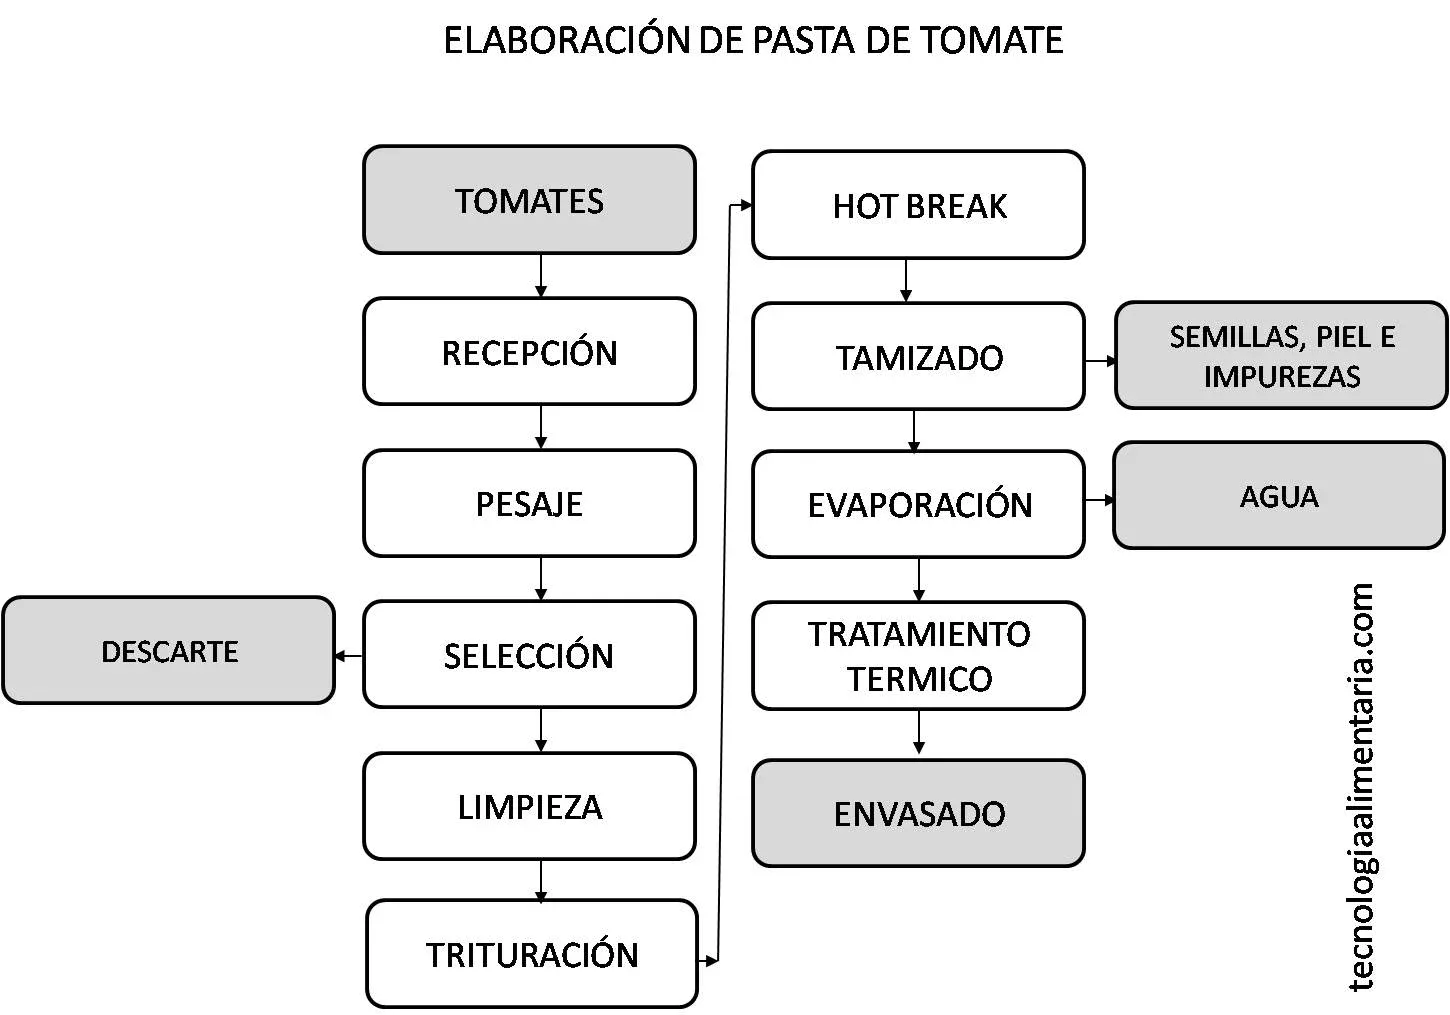 Diagrama de flujo elaboración de pasta de tomate